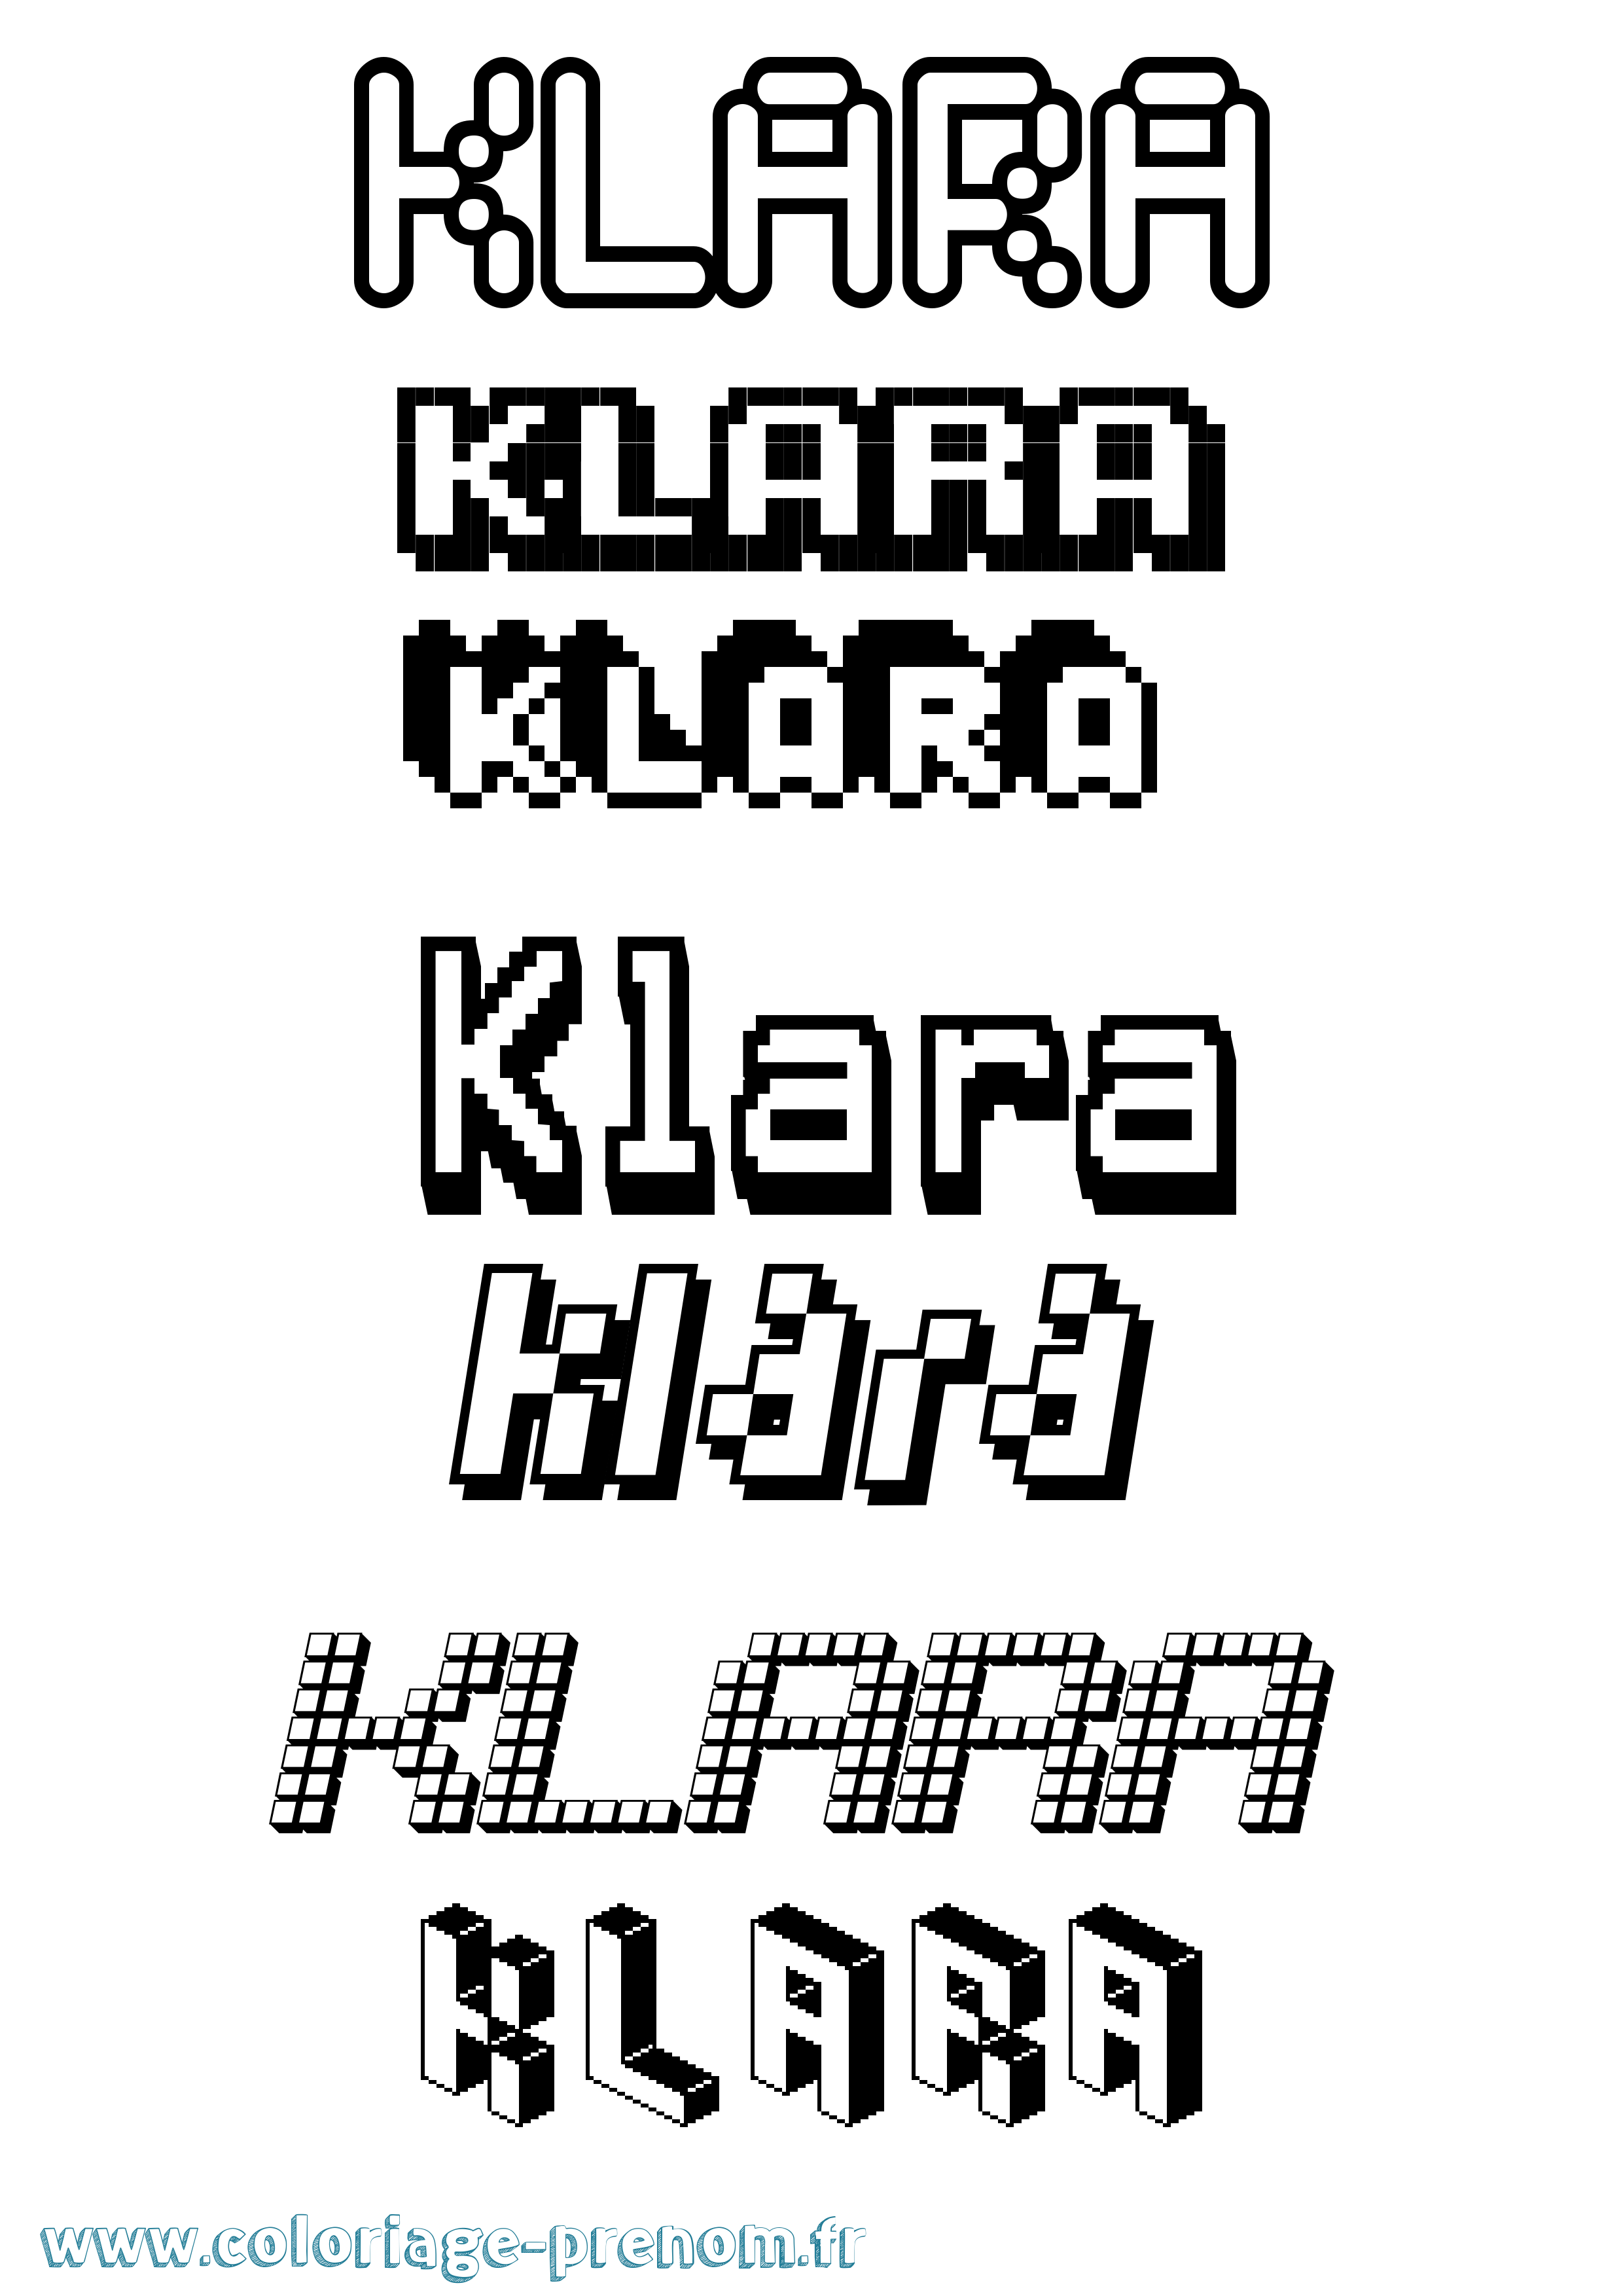 Coloriage prénom Klara Pixel